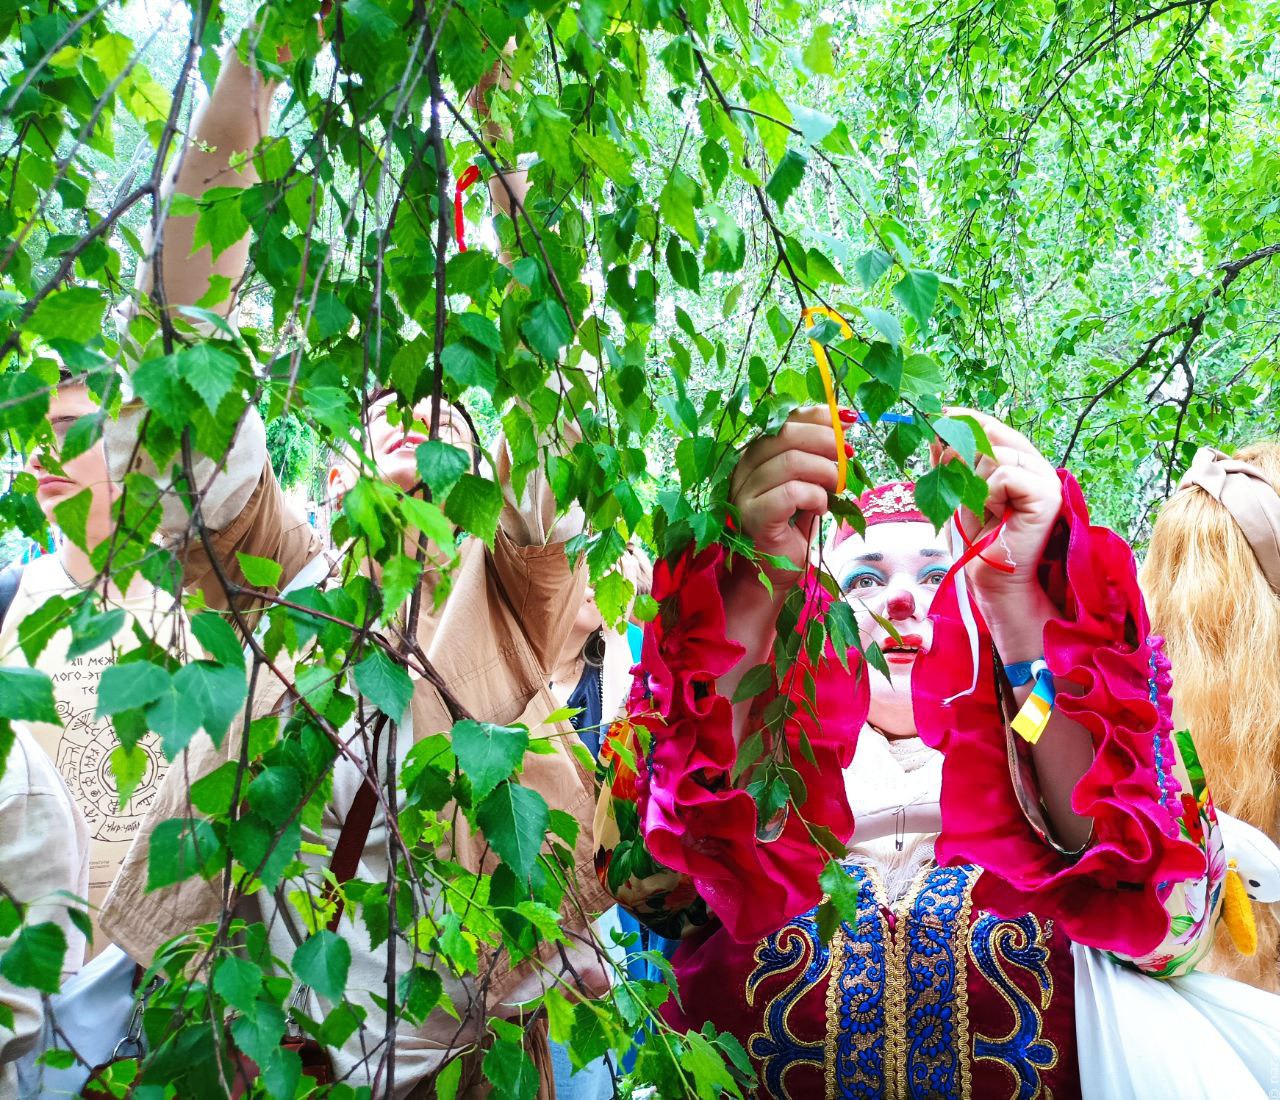 Фестиваль этнических кукольных театров "Чир Чайаан на траве" открылся в Абакане в День Республики Хакасия